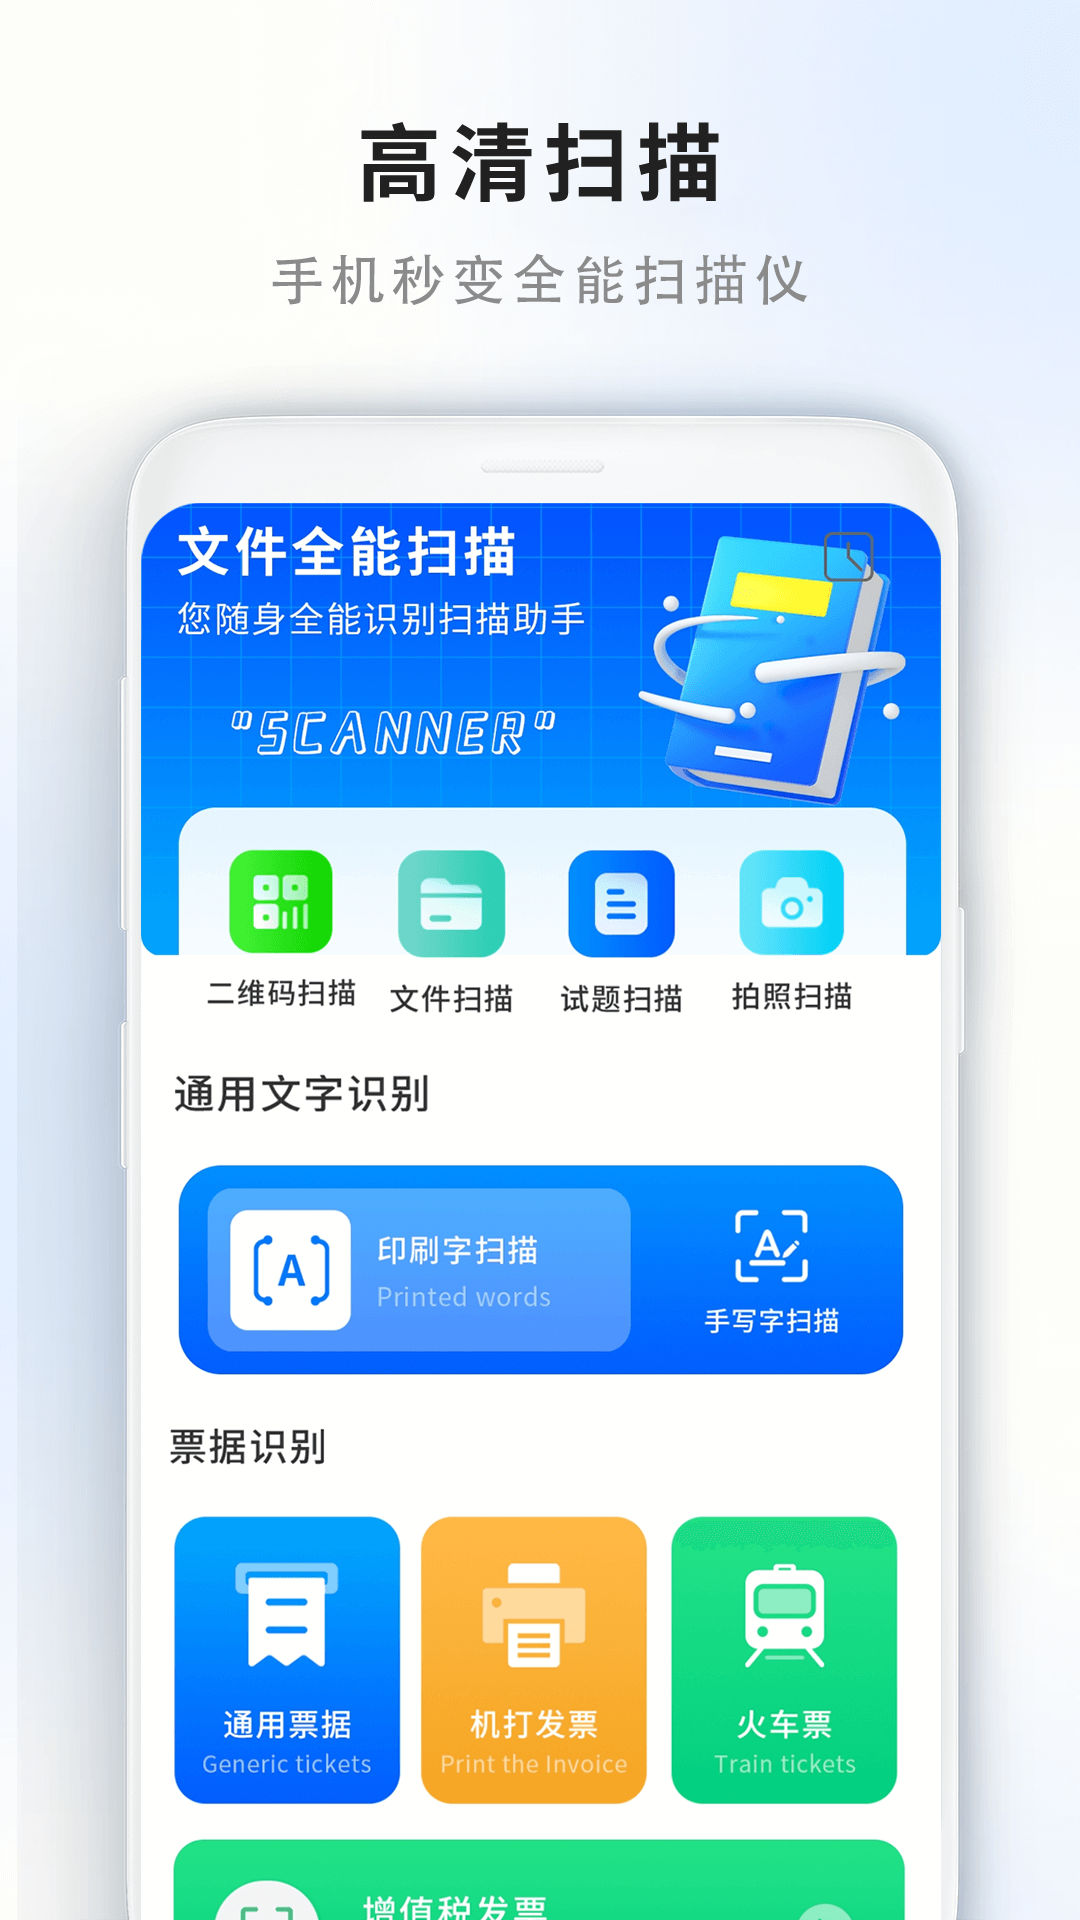 门禁卡读取器app下载,门禁卡读取器app安卓版 v1.0